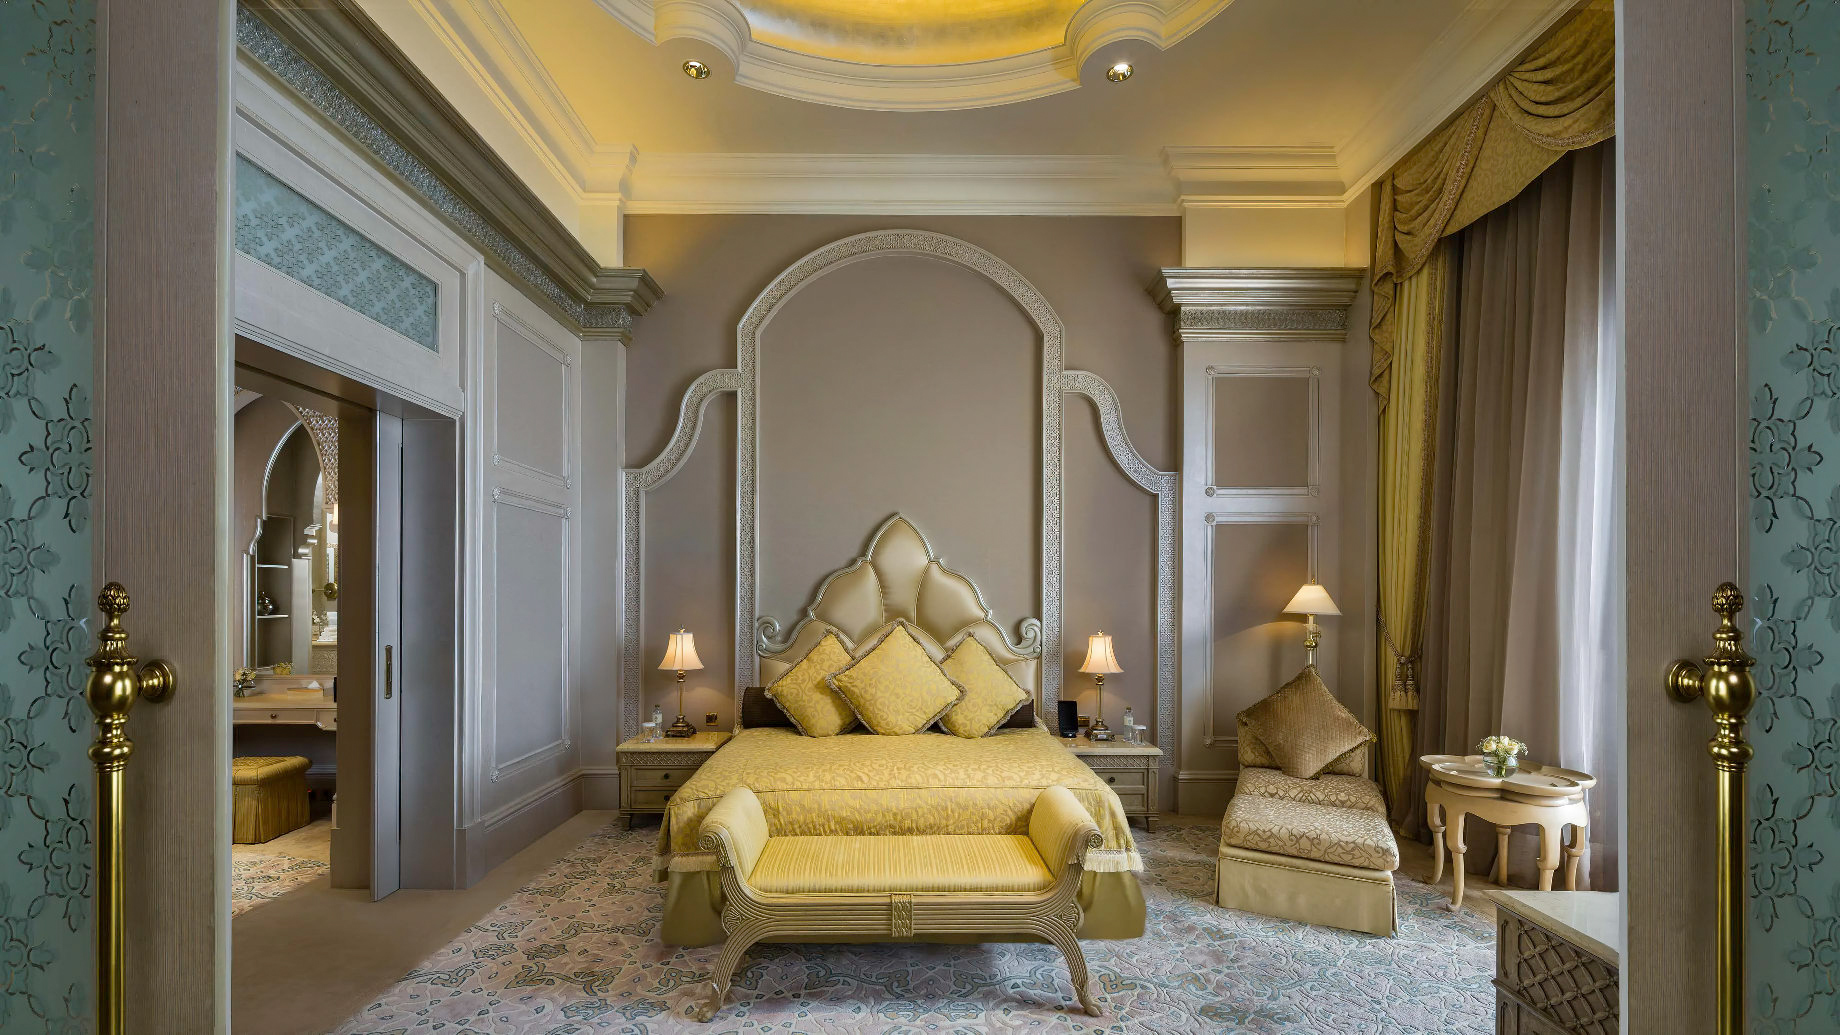 Emirates Palace Abu Dhabi Hotel – Abu Dhabi, UAE – Two Bedroom Palace Suite